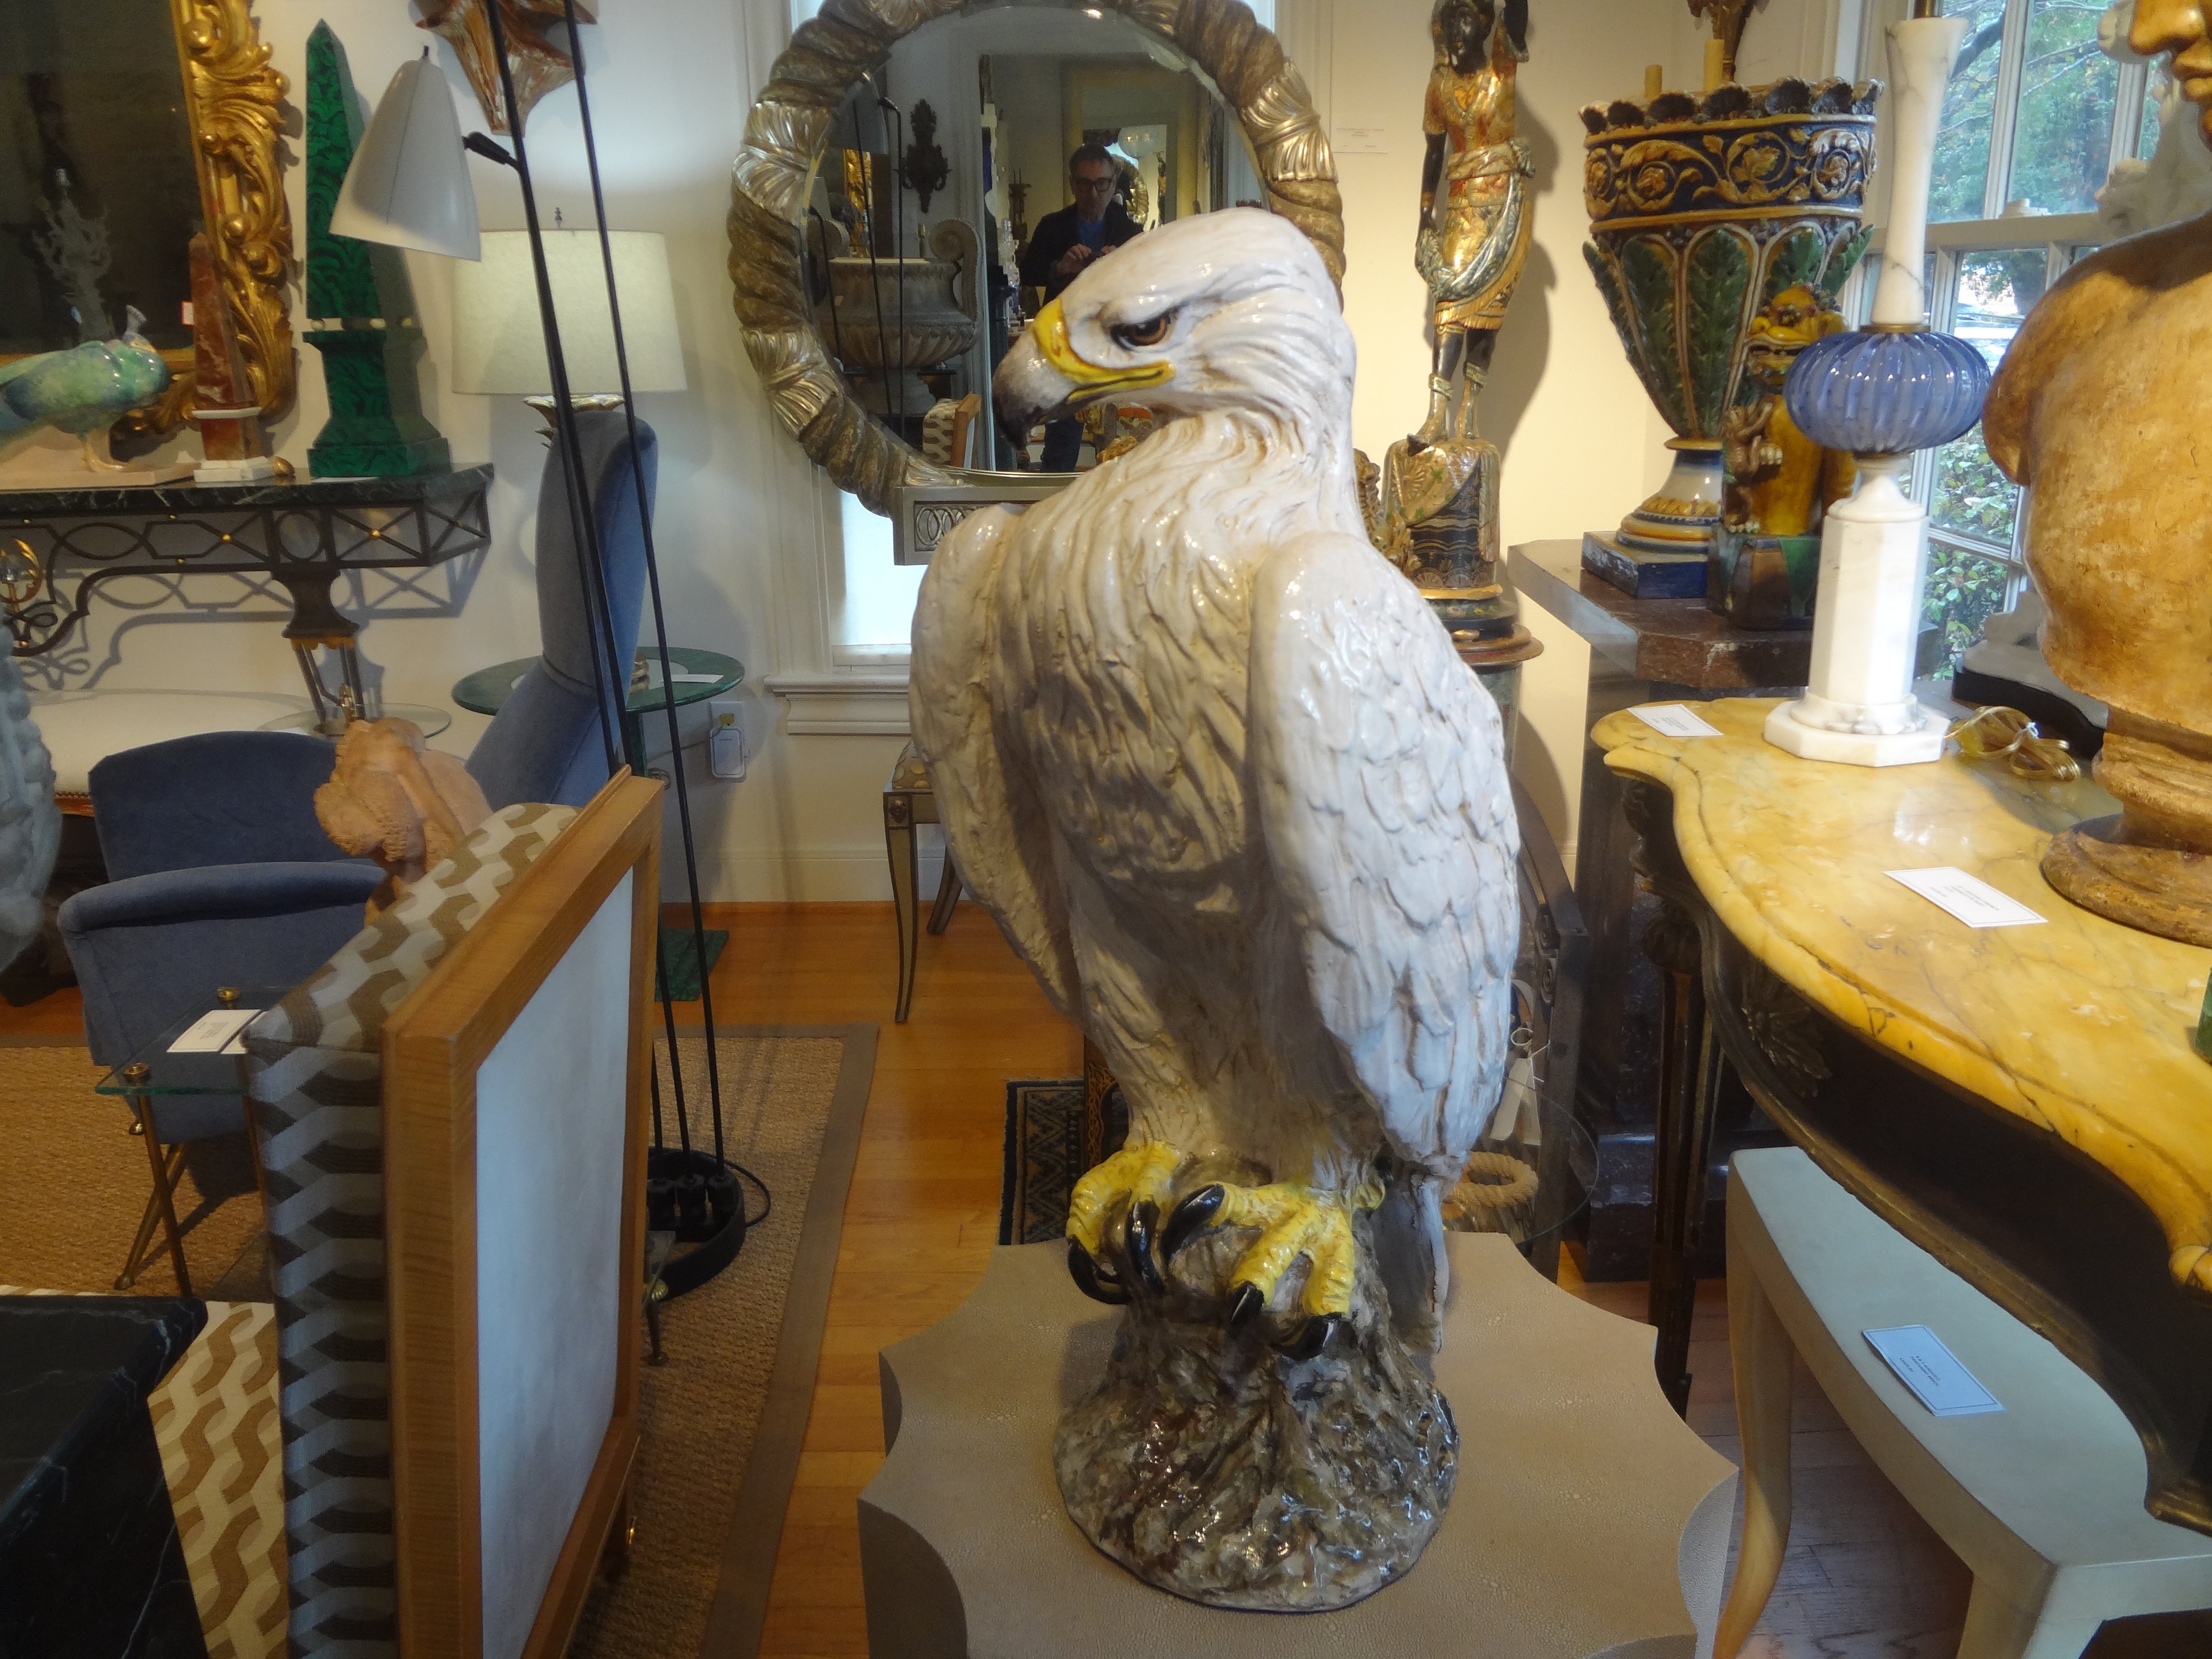 Vintage Italian Glazed Terracotta Eagle Sculpture.
Diese lebensgroße Hollywood Regency italienische Adler Figur oder Skulptur ist fachmännisch in realistischen Farben ausgeführt.
Unsere italienische Skulptur ist in sehr gutem Vintage-Zustand.